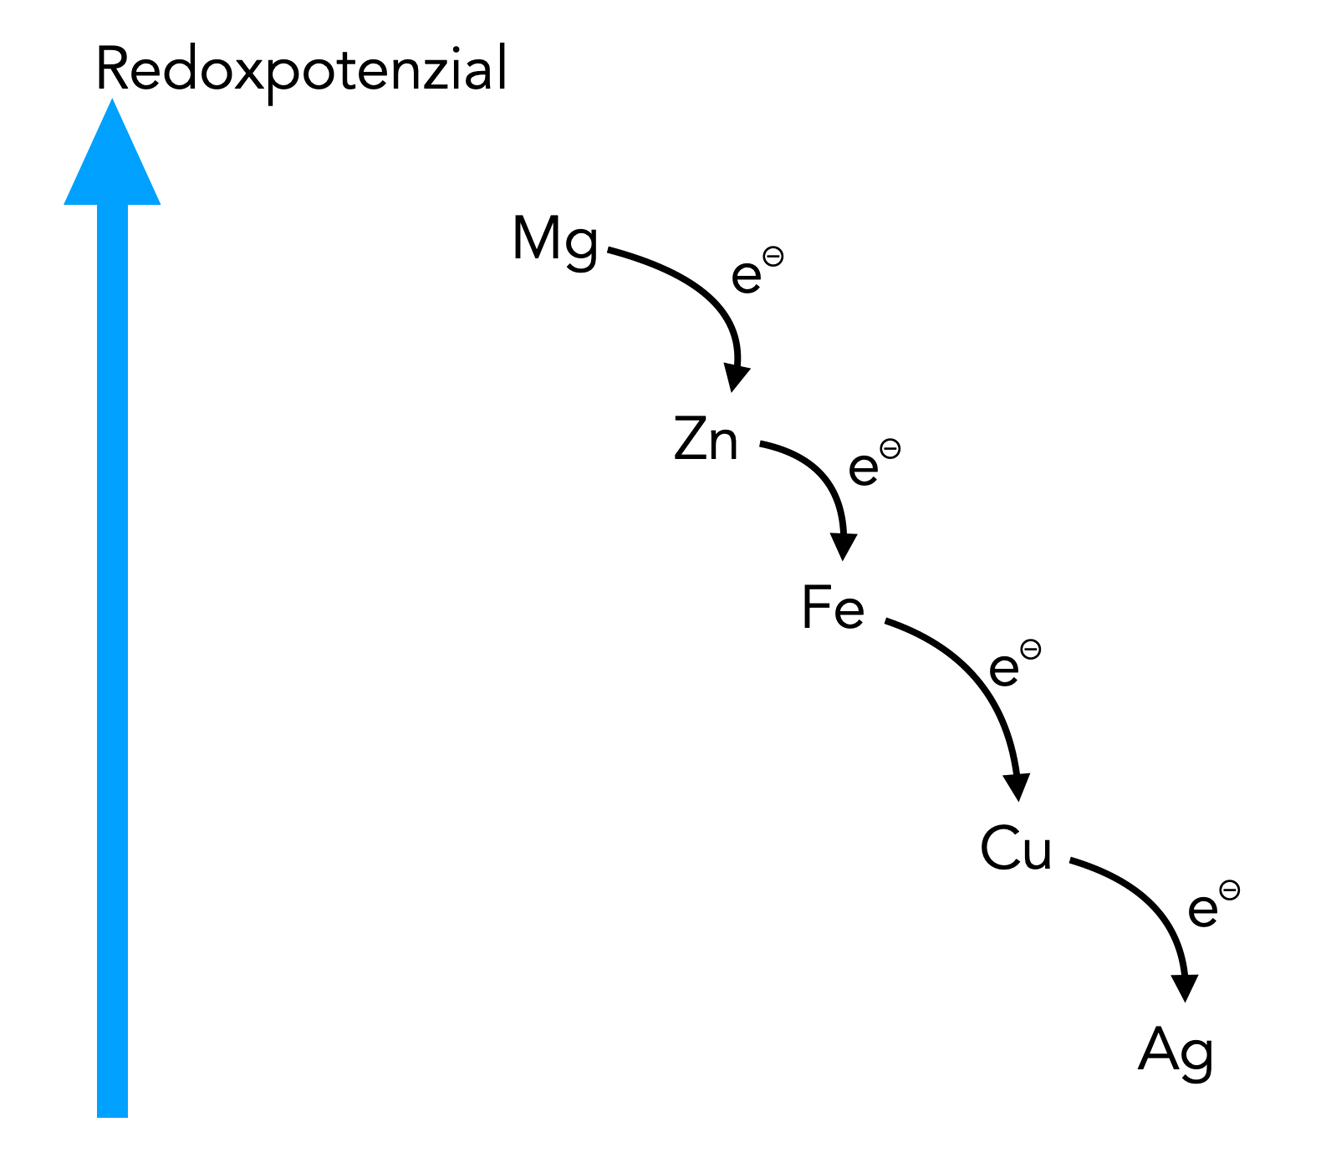 sachlich noch nicht ganz richtige Darstellung der Redoxpotenziale. Von oben nach unten: Mg, Zn, Fe, Cu, Ag